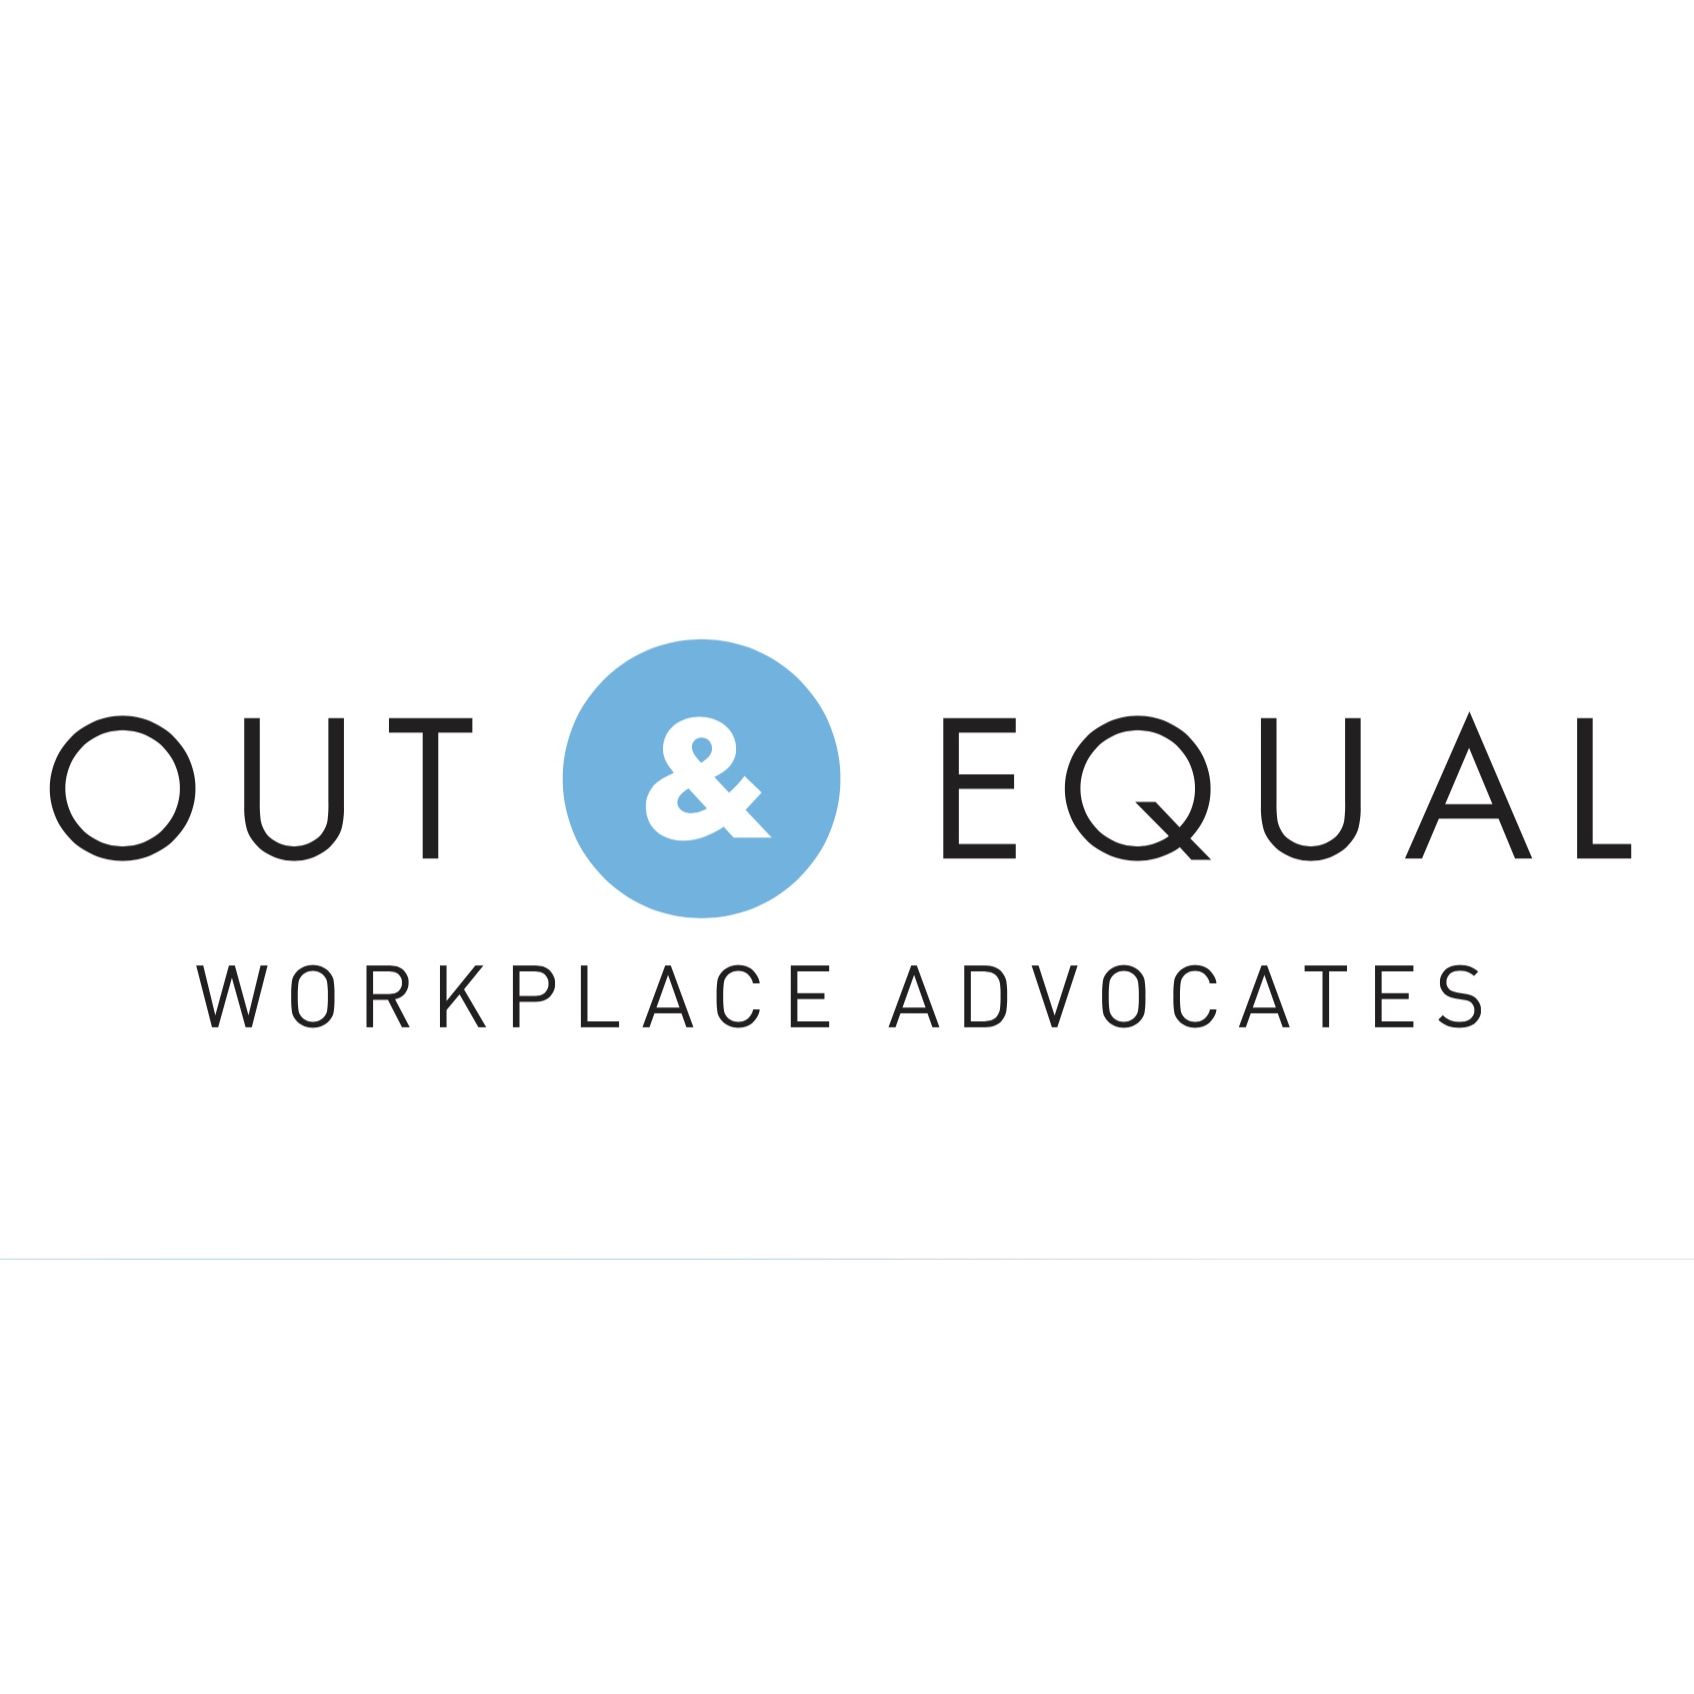 LGBTQ Organization in San Diego California - Out & Equal